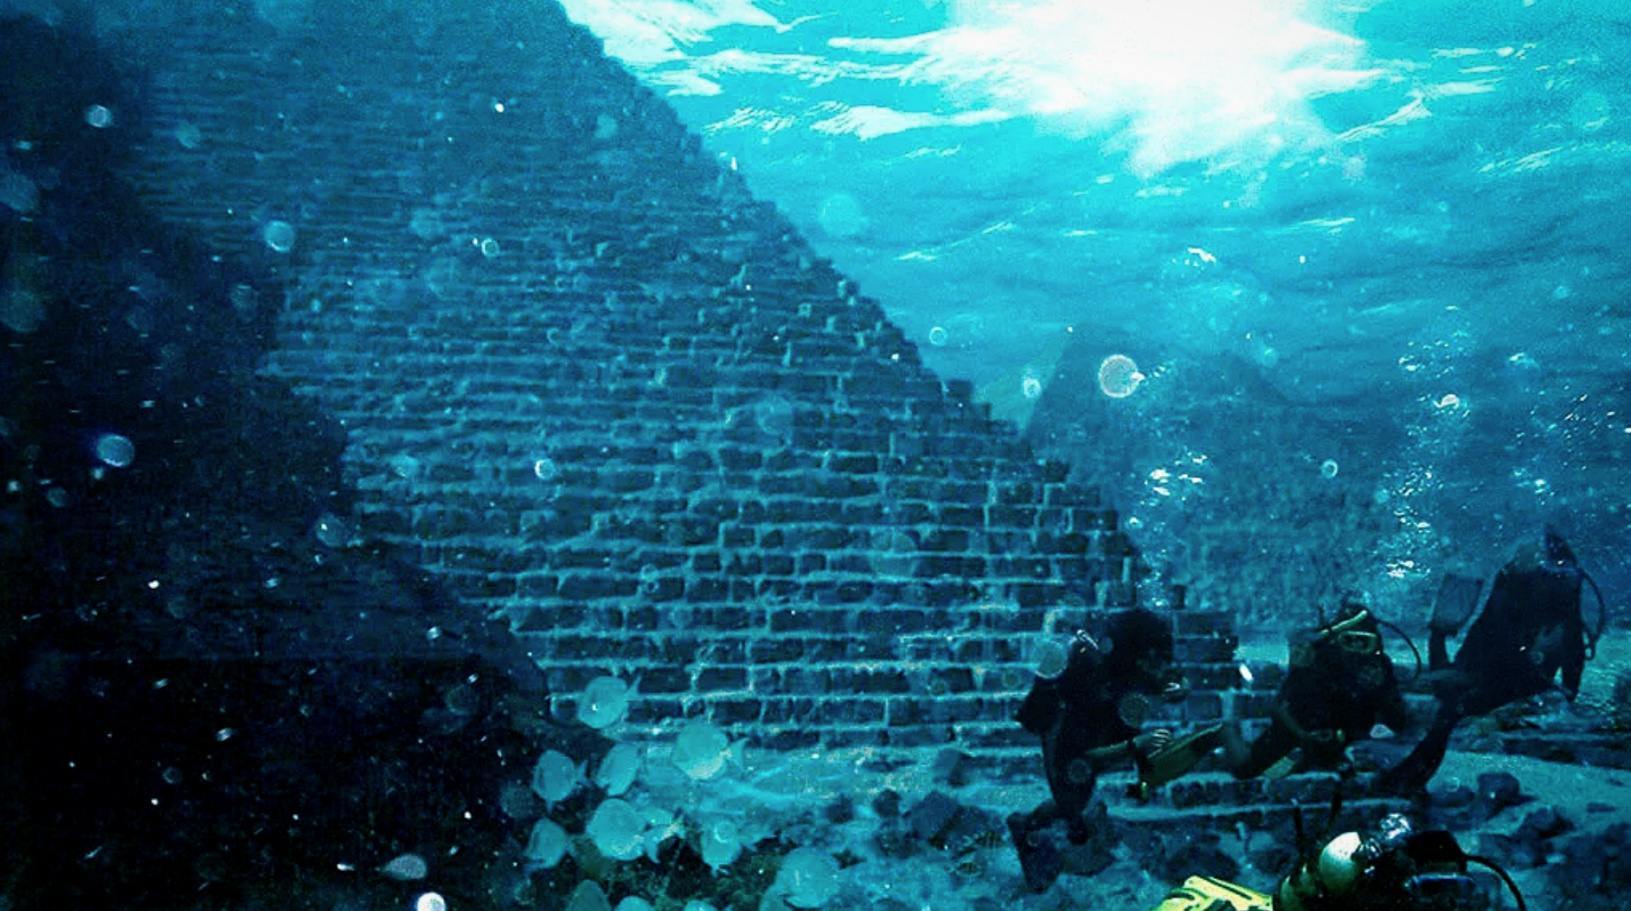 10 salapärast asukohta kadunud Atlantise linna leidmiseks 8